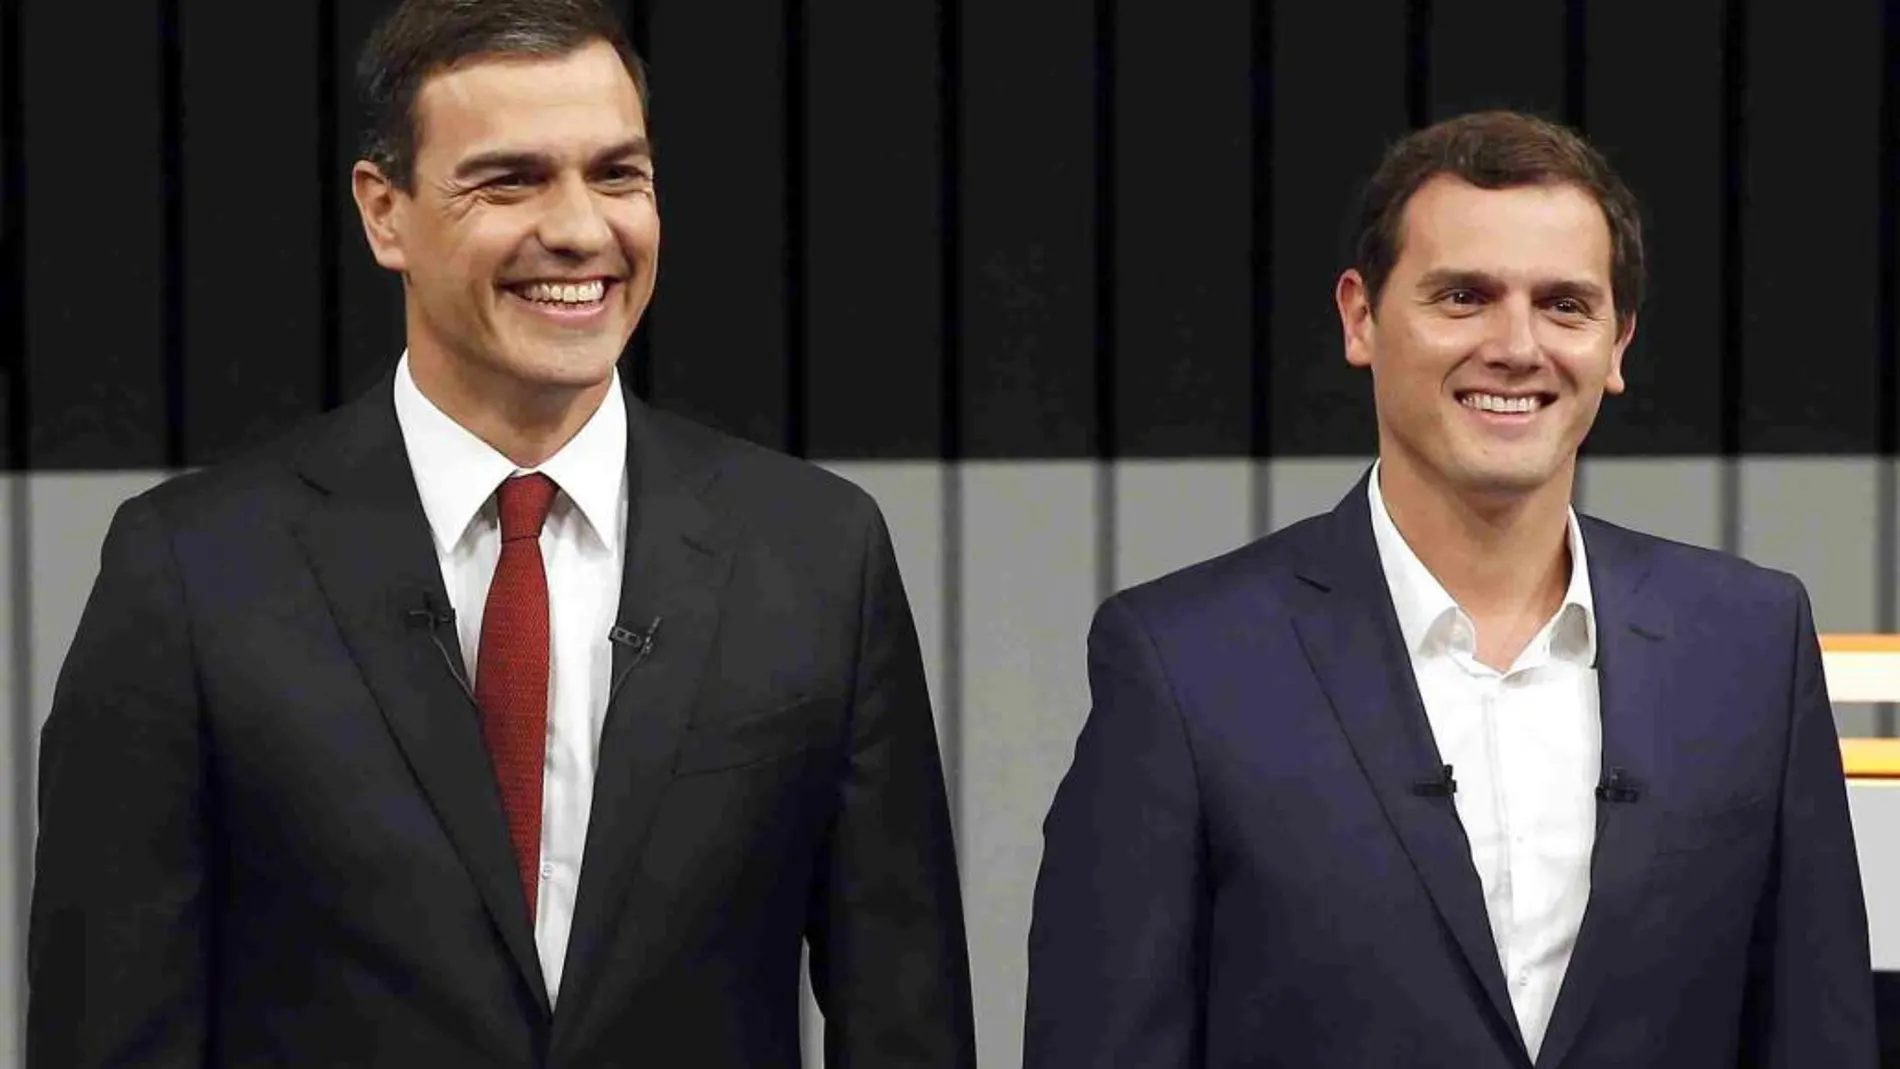 El líder del PSOE, Pedro Sánchez y el presidente de Ciudadanos, Albert Rivera momentos antes de iniciar el debate a cuatro de la pasada campaña electoral.